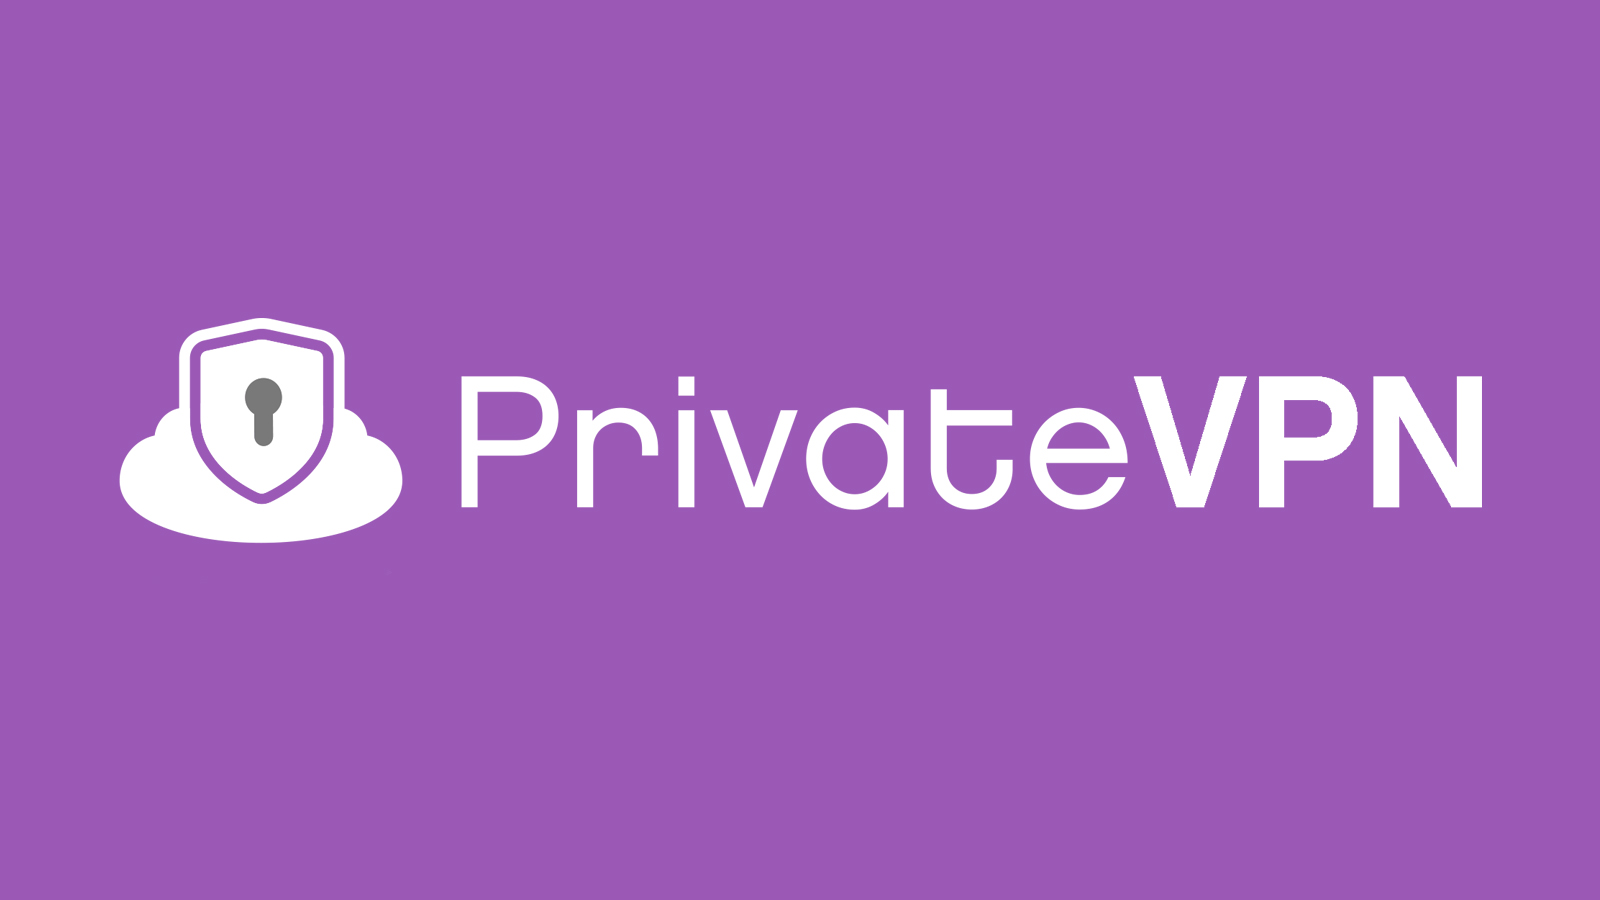 Tor Network VPN PrivateVPN